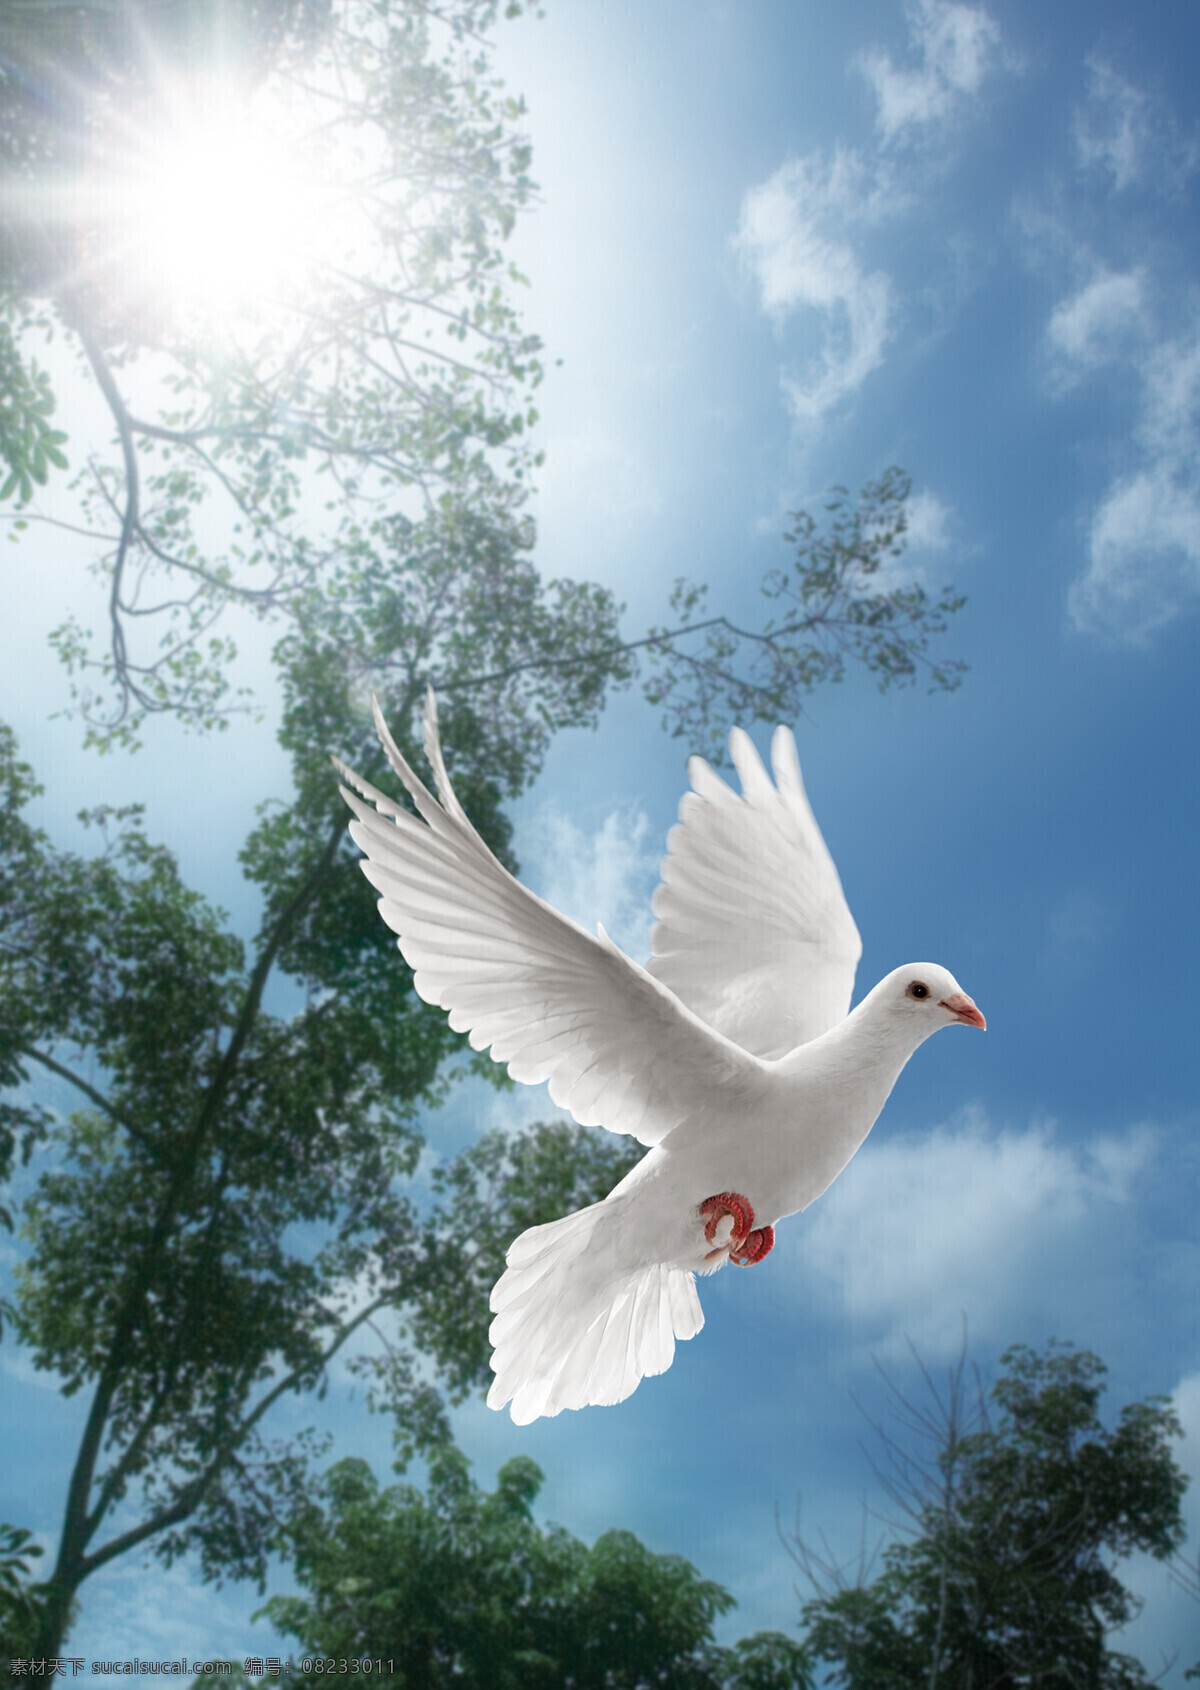 展翅 飞翔 鸽子 蓝天白云 天空 白鸽 和平鸽 高清图片 空中飞鸟 生物世界